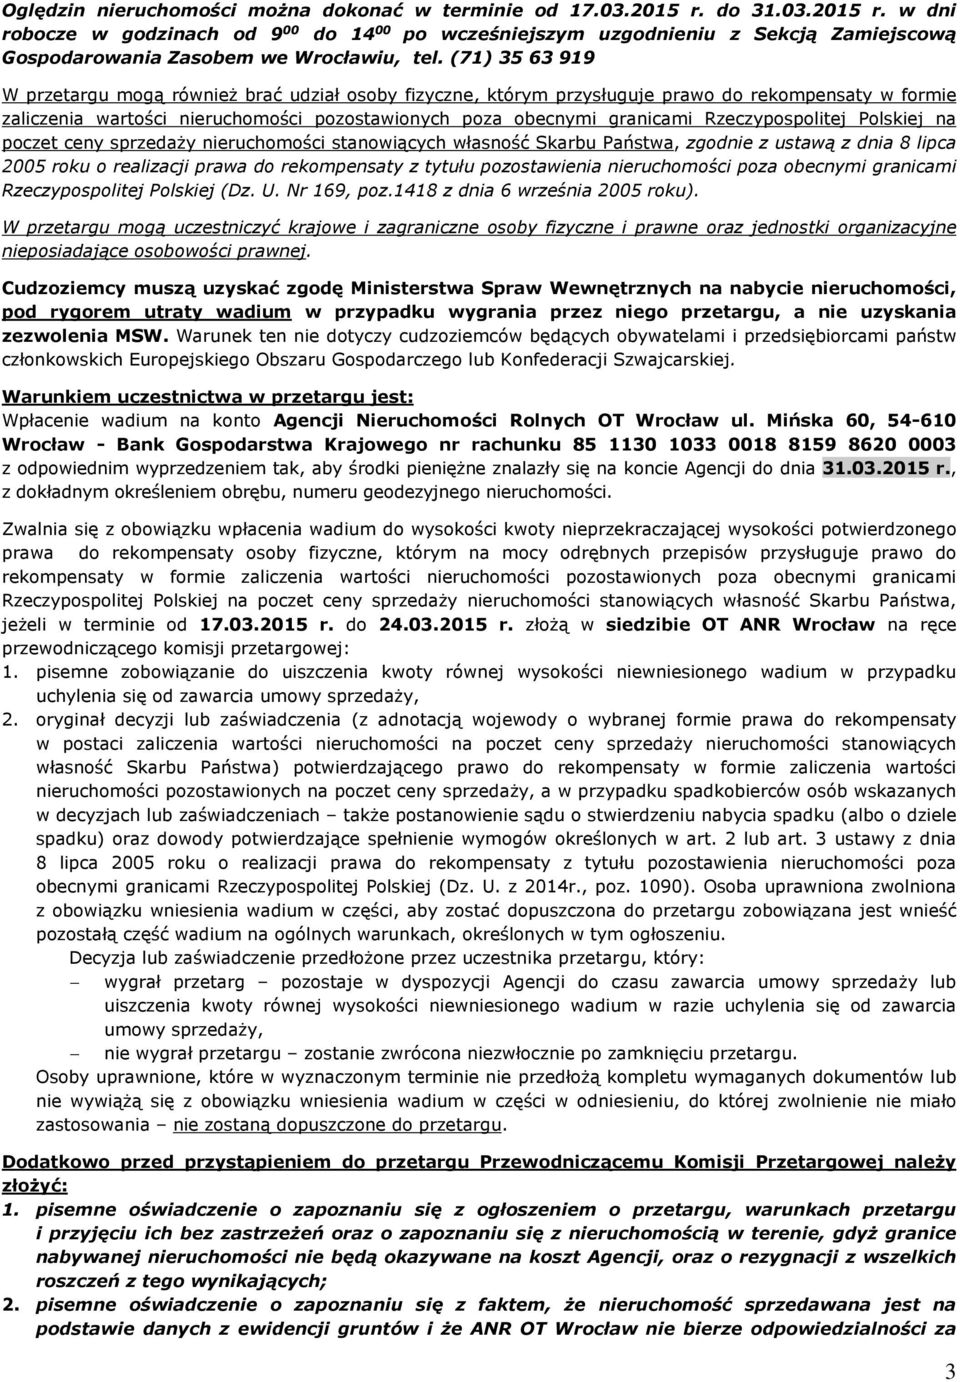 Rzeczypospolitej Polskiej na poczet ceny sprzedaży nieruchomości stanowiących własność Skarbu Państwa, zgodnie z ustawą z dnia 8 lipca 2005 roku o realizacji prawa do rekompensaty z tytułu